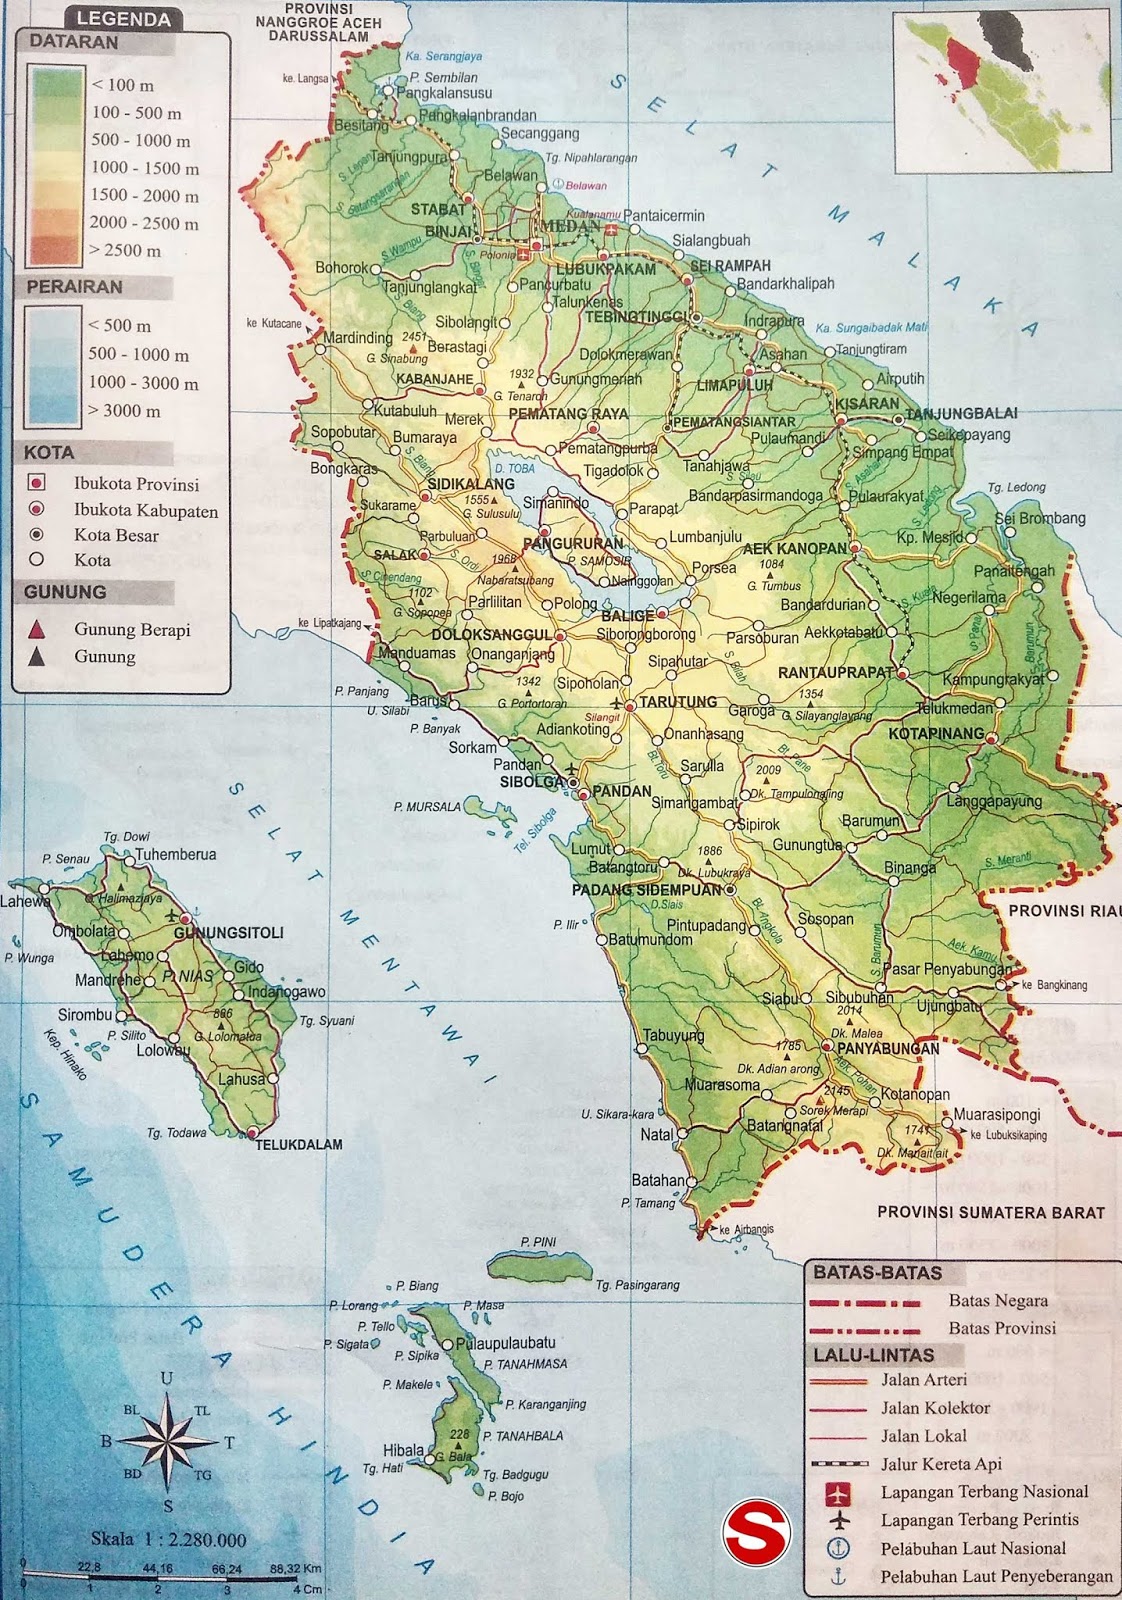  Peta  Sumatra Utara  lengkap dengan 25 nama kabupaten dan 8 